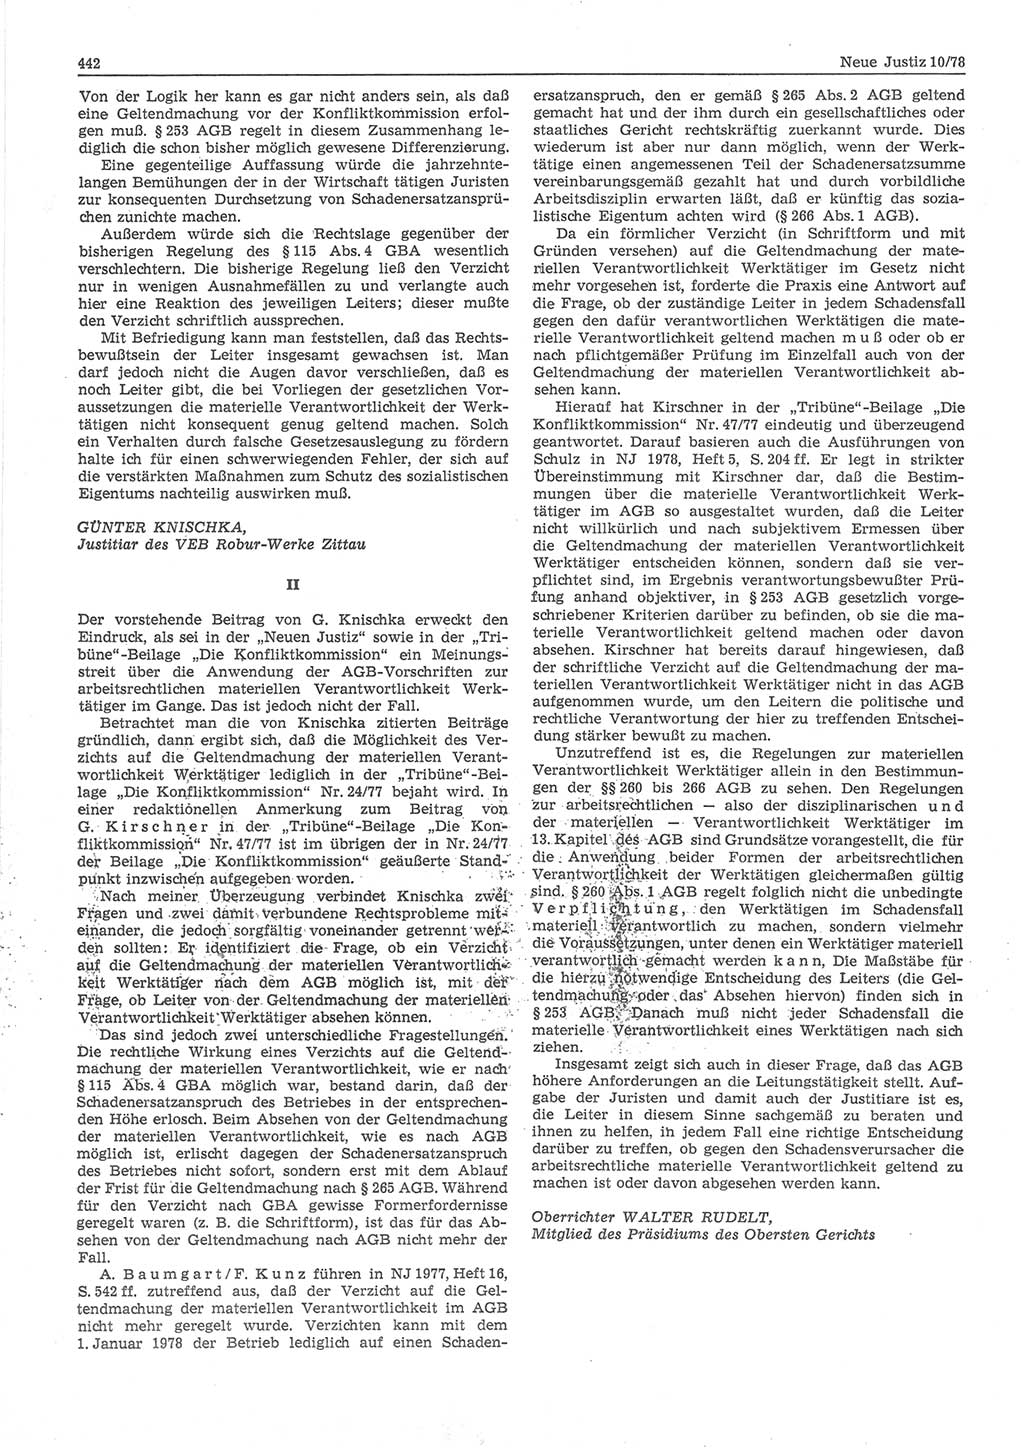 Neue Justiz (NJ), Zeitschrift für sozialistisches Recht und Gesetzlichkeit [Deutsche Demokratische Republik (DDR)], 32. Jahrgang 1978, Seite 442 (NJ DDR 1978, S. 442)